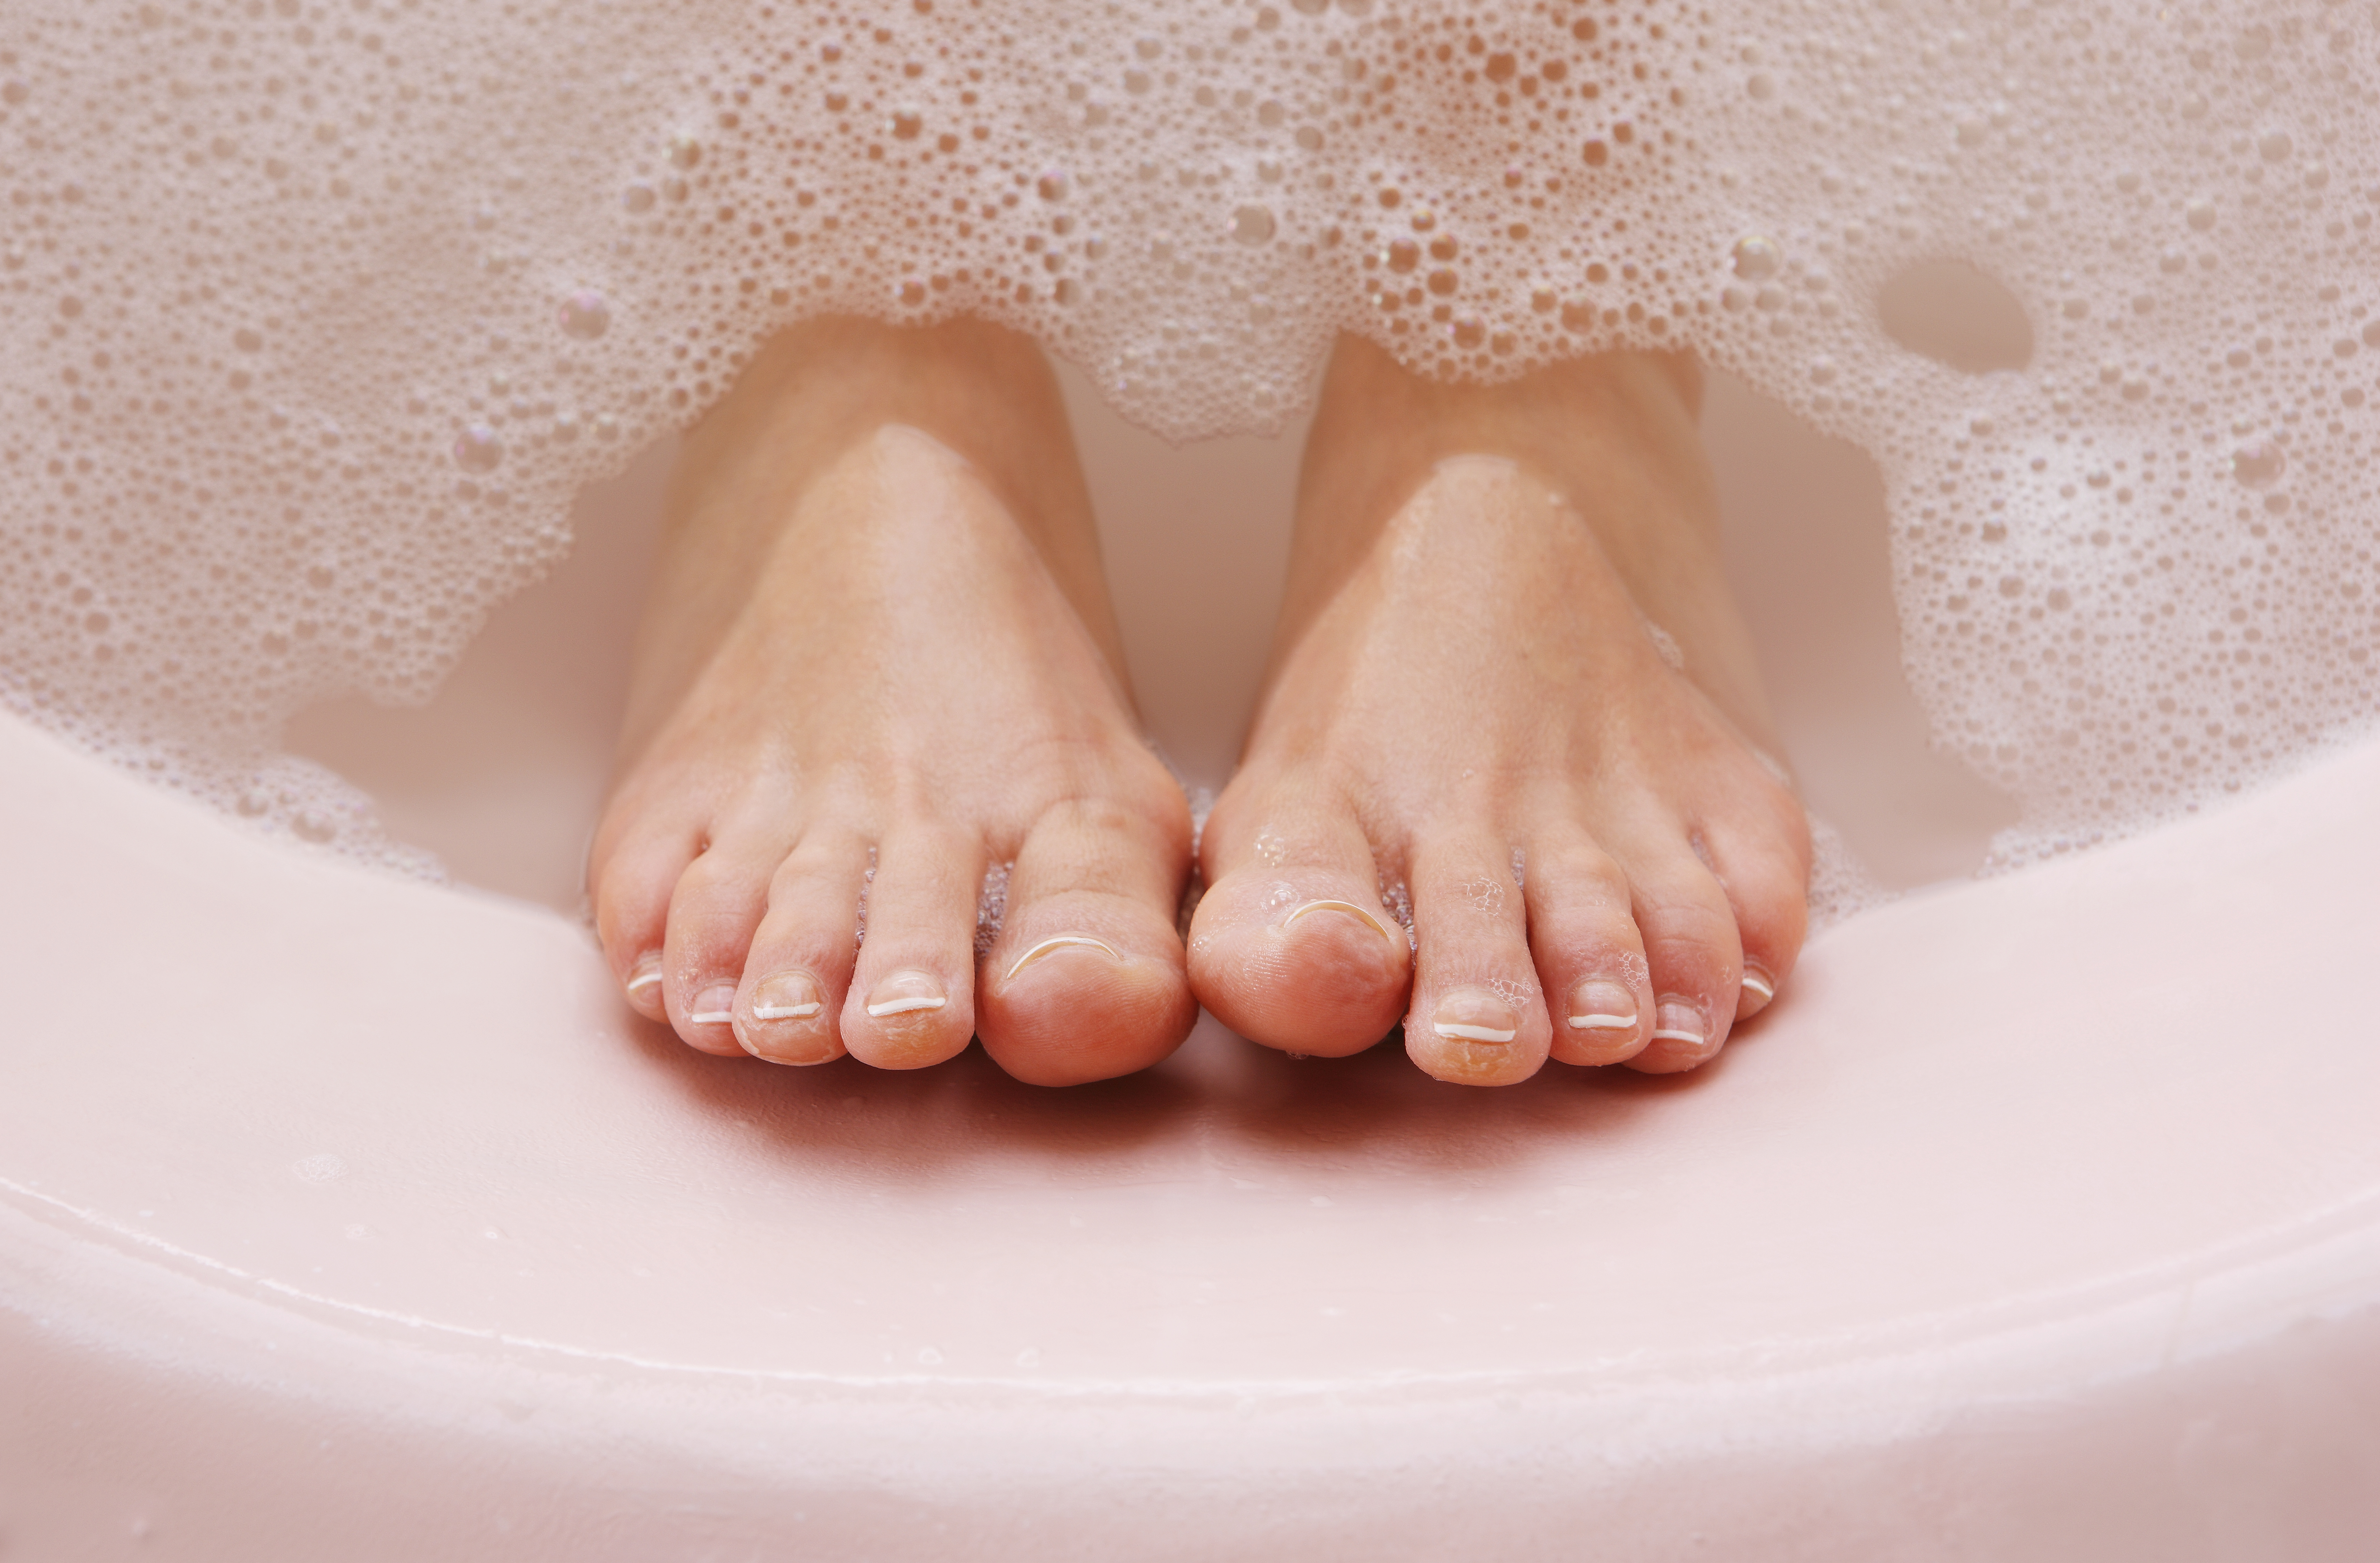 foot bath to remove dead skin